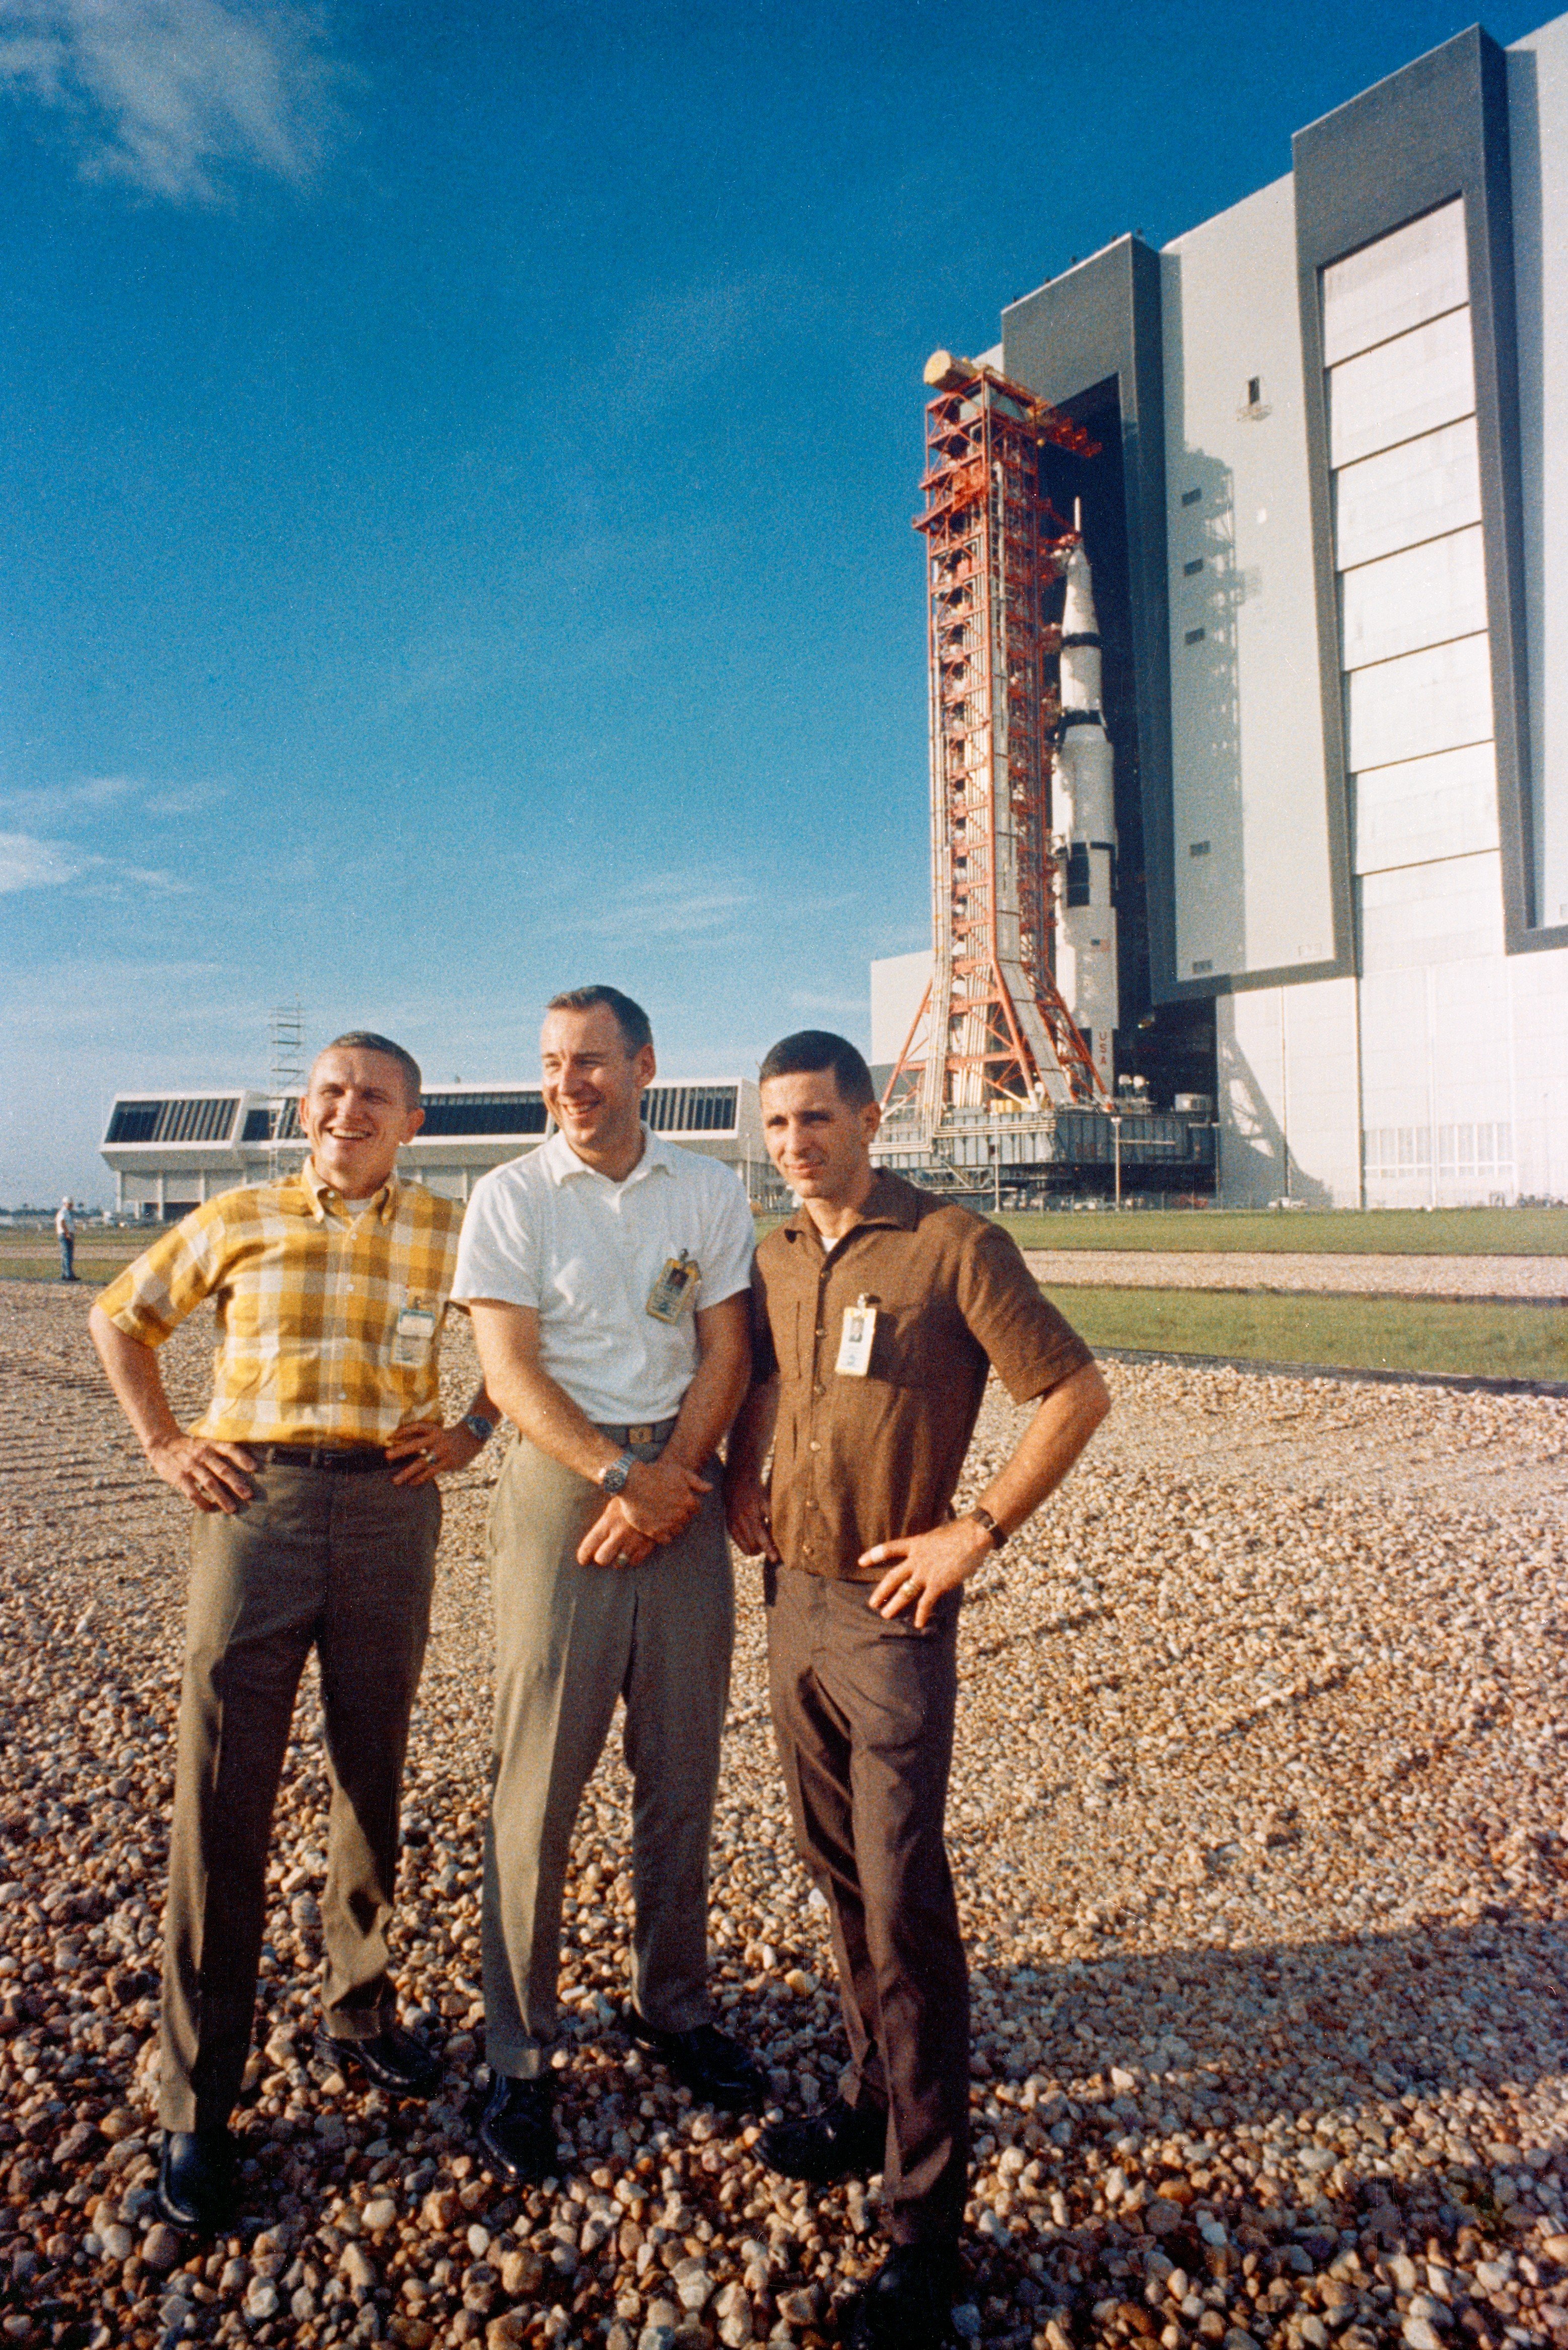 Команда космонавтов космического корабля Аполлон-8 при подготовке полета / NASA / archive.org